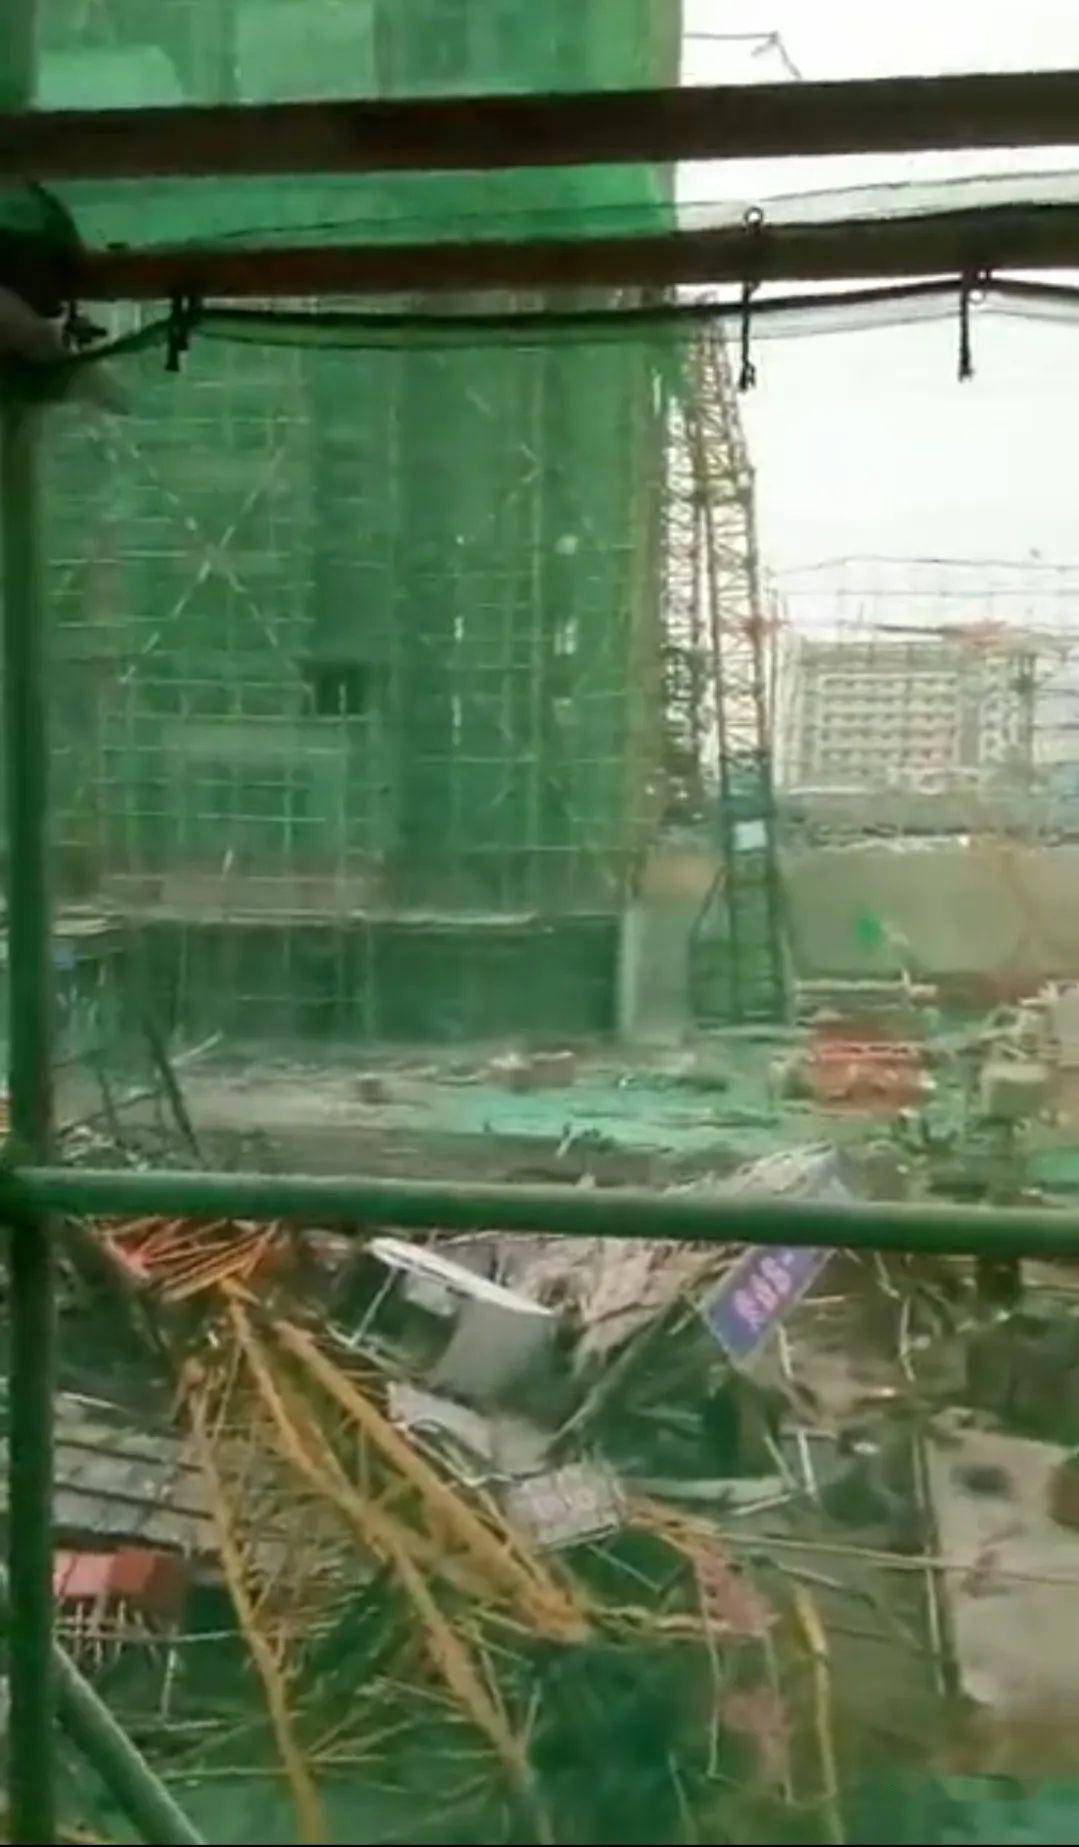 山东潍坊一在建工地两台塔吊发生倒塌事故,附:五类常见塔吊事故案例